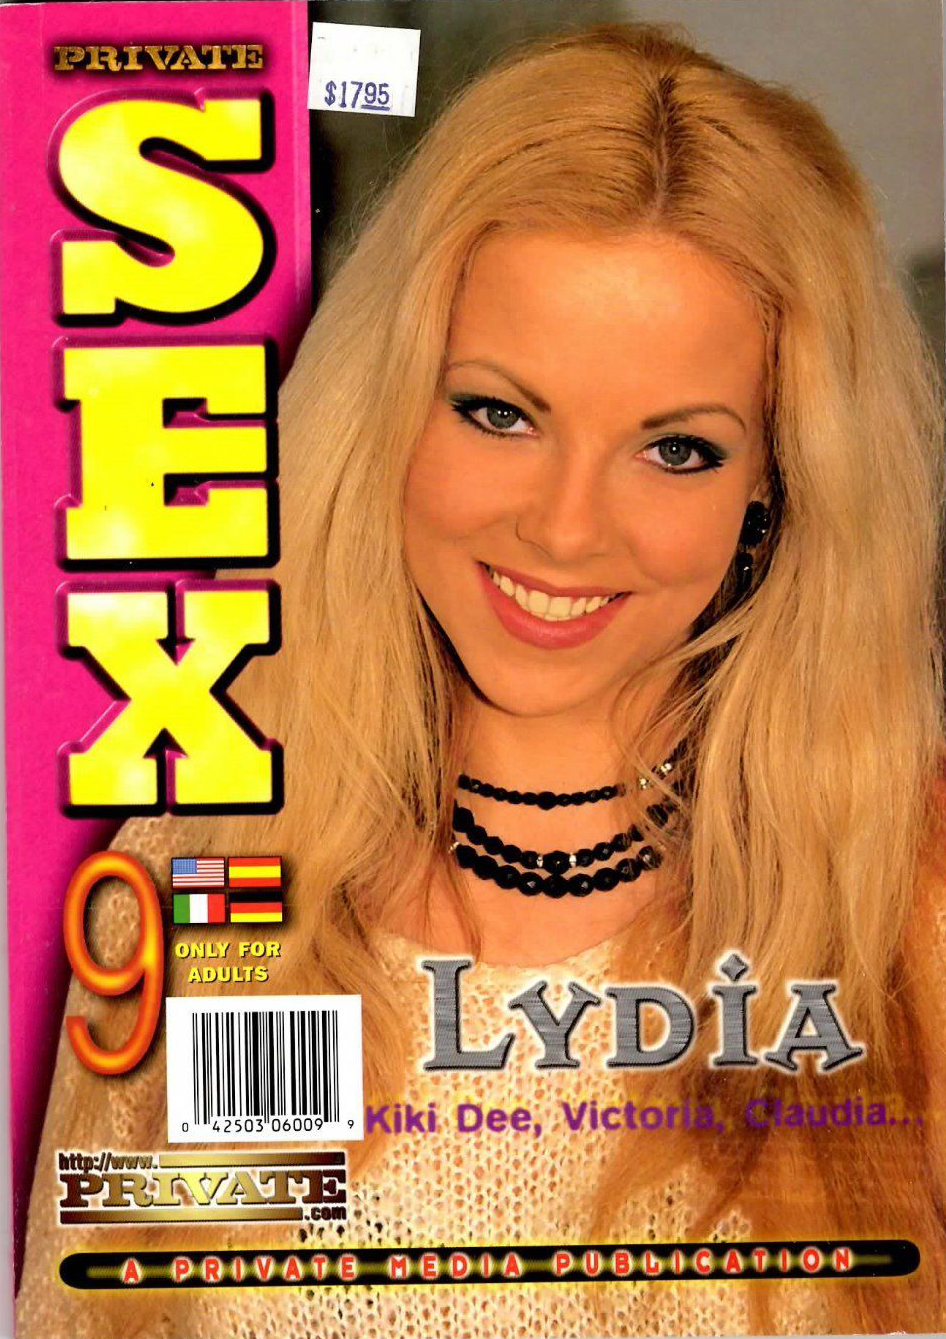 Private Sex 9 Lydia Kiki Dee Victoria Claudia Magazine